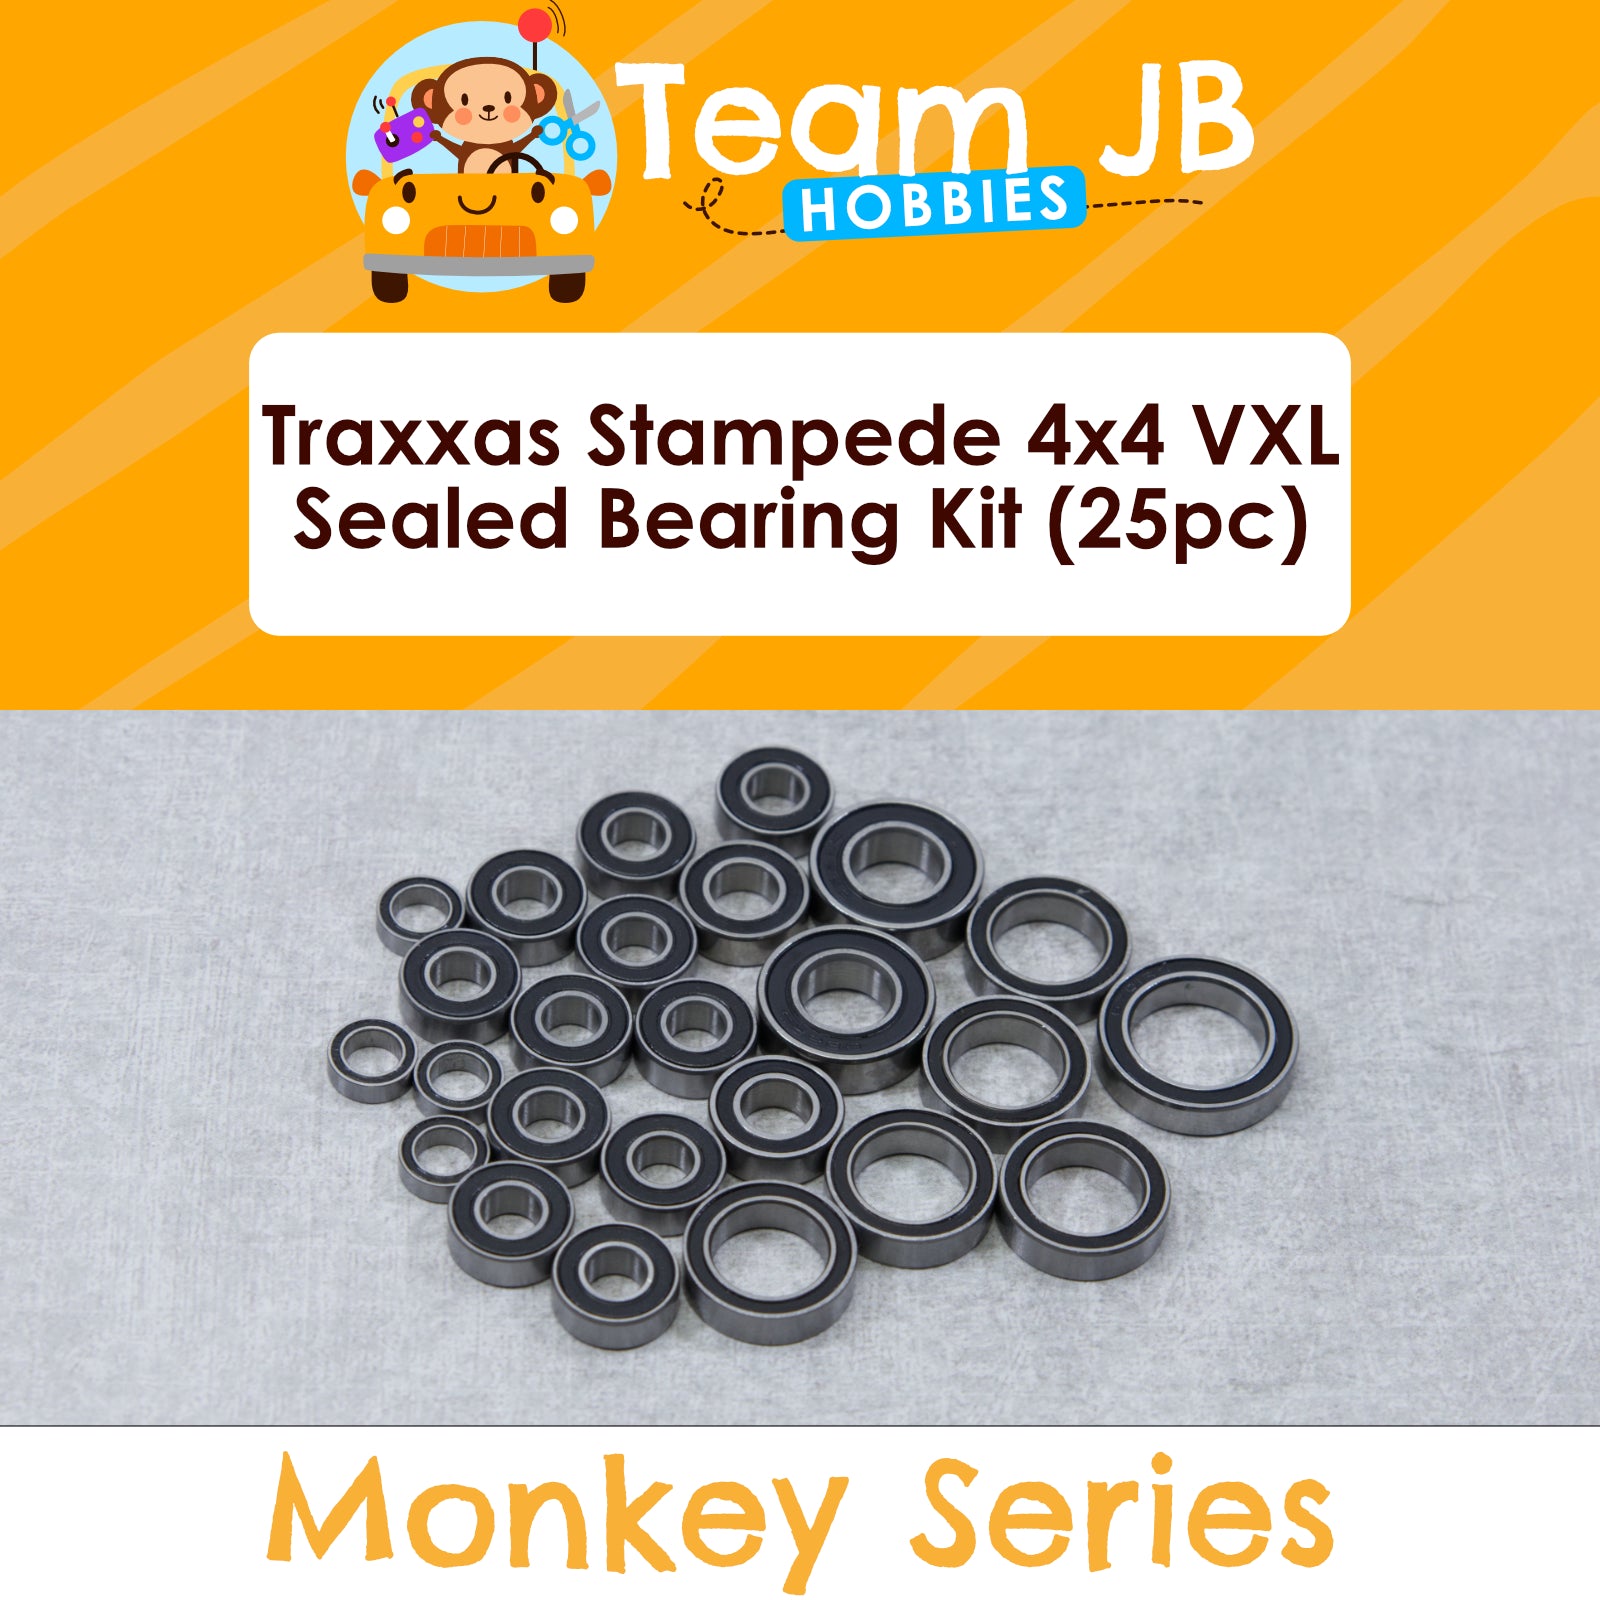 Traxxas Stampede 4x4 VXL - Sealed Bearing Kit